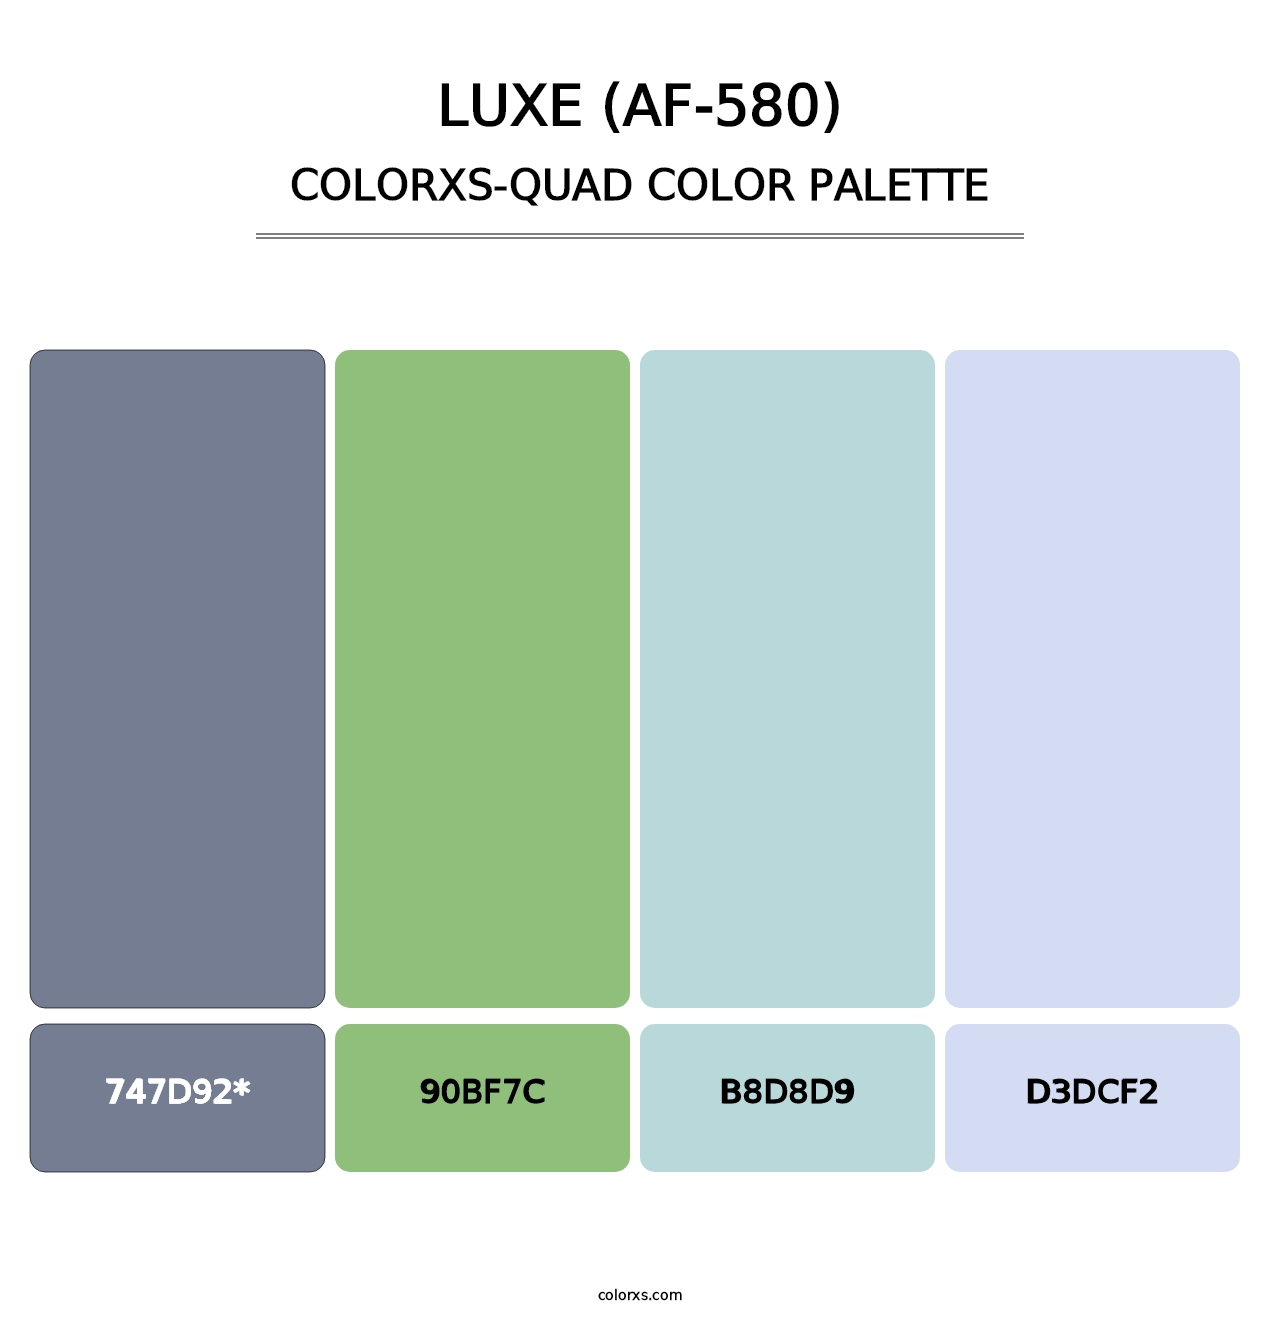 Luxe (AF-580) - Colorxs Quad Palette